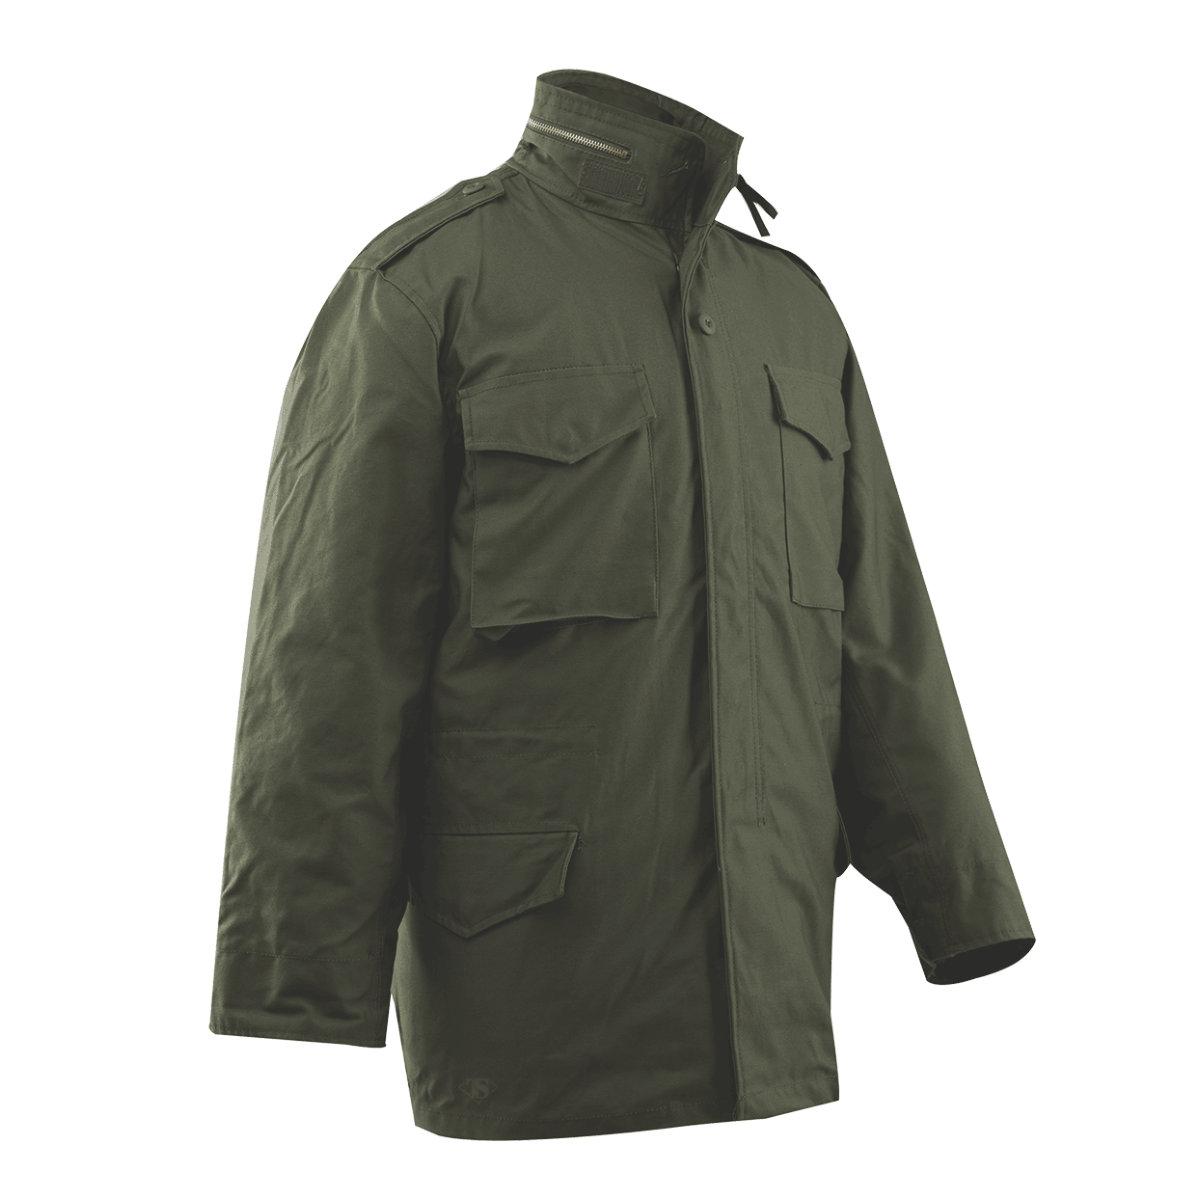 Tru-Spec M-65 Field Coat/Jacket with Liner | eBay